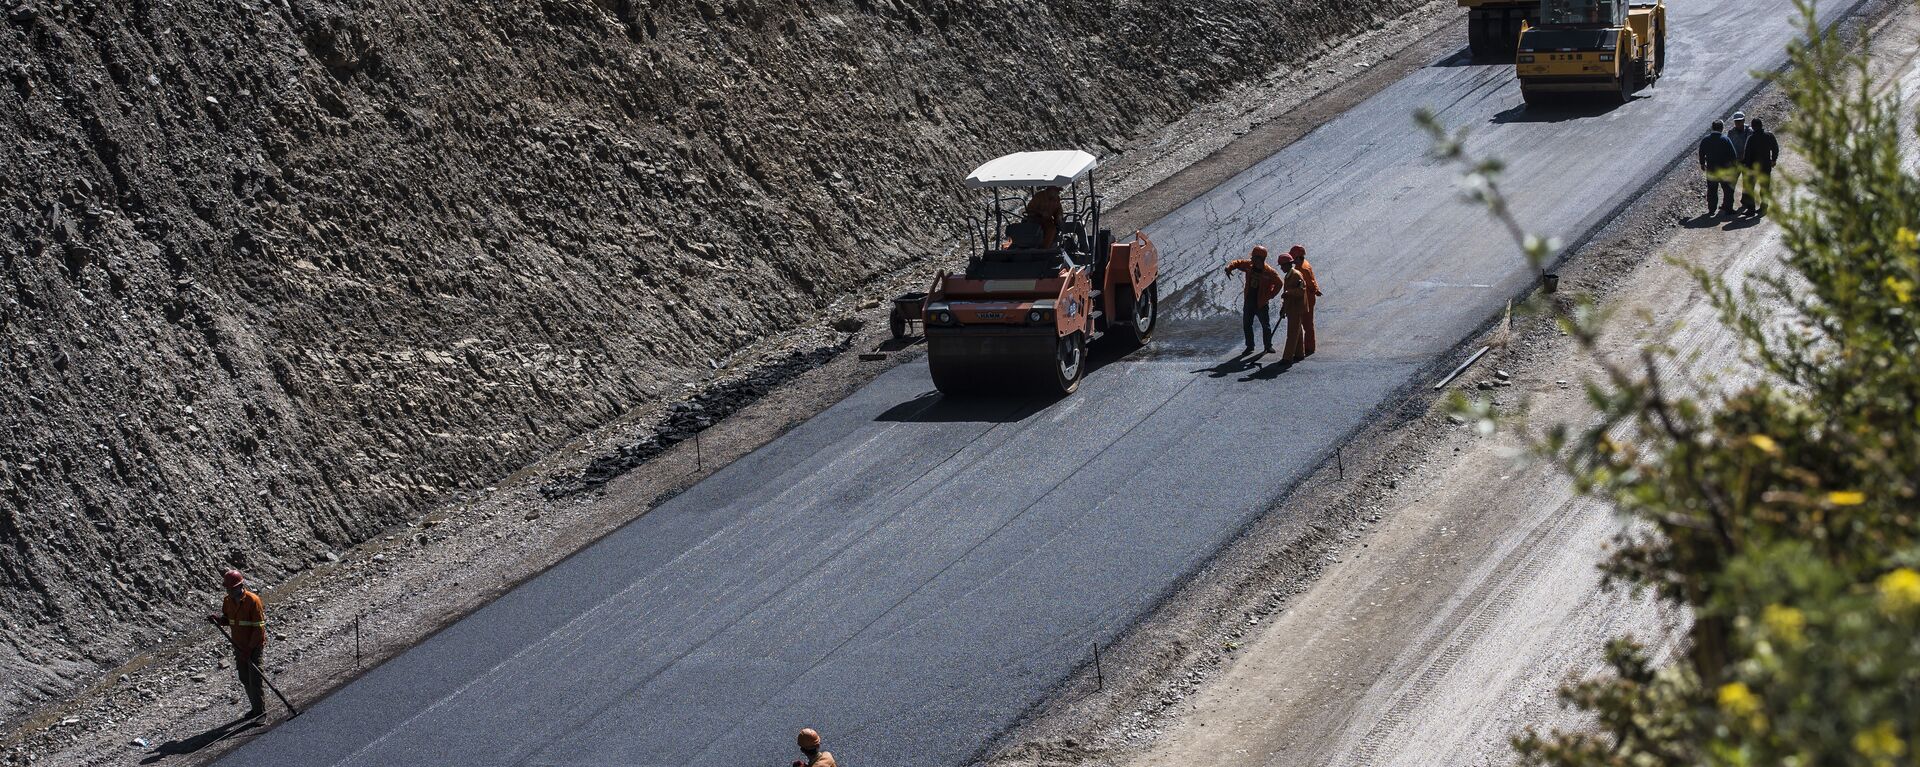 Строительство альтернативной дороги север — юг в КР. Архивное фото - Sputnik Кыргызстан, 1920, 03.06.2021